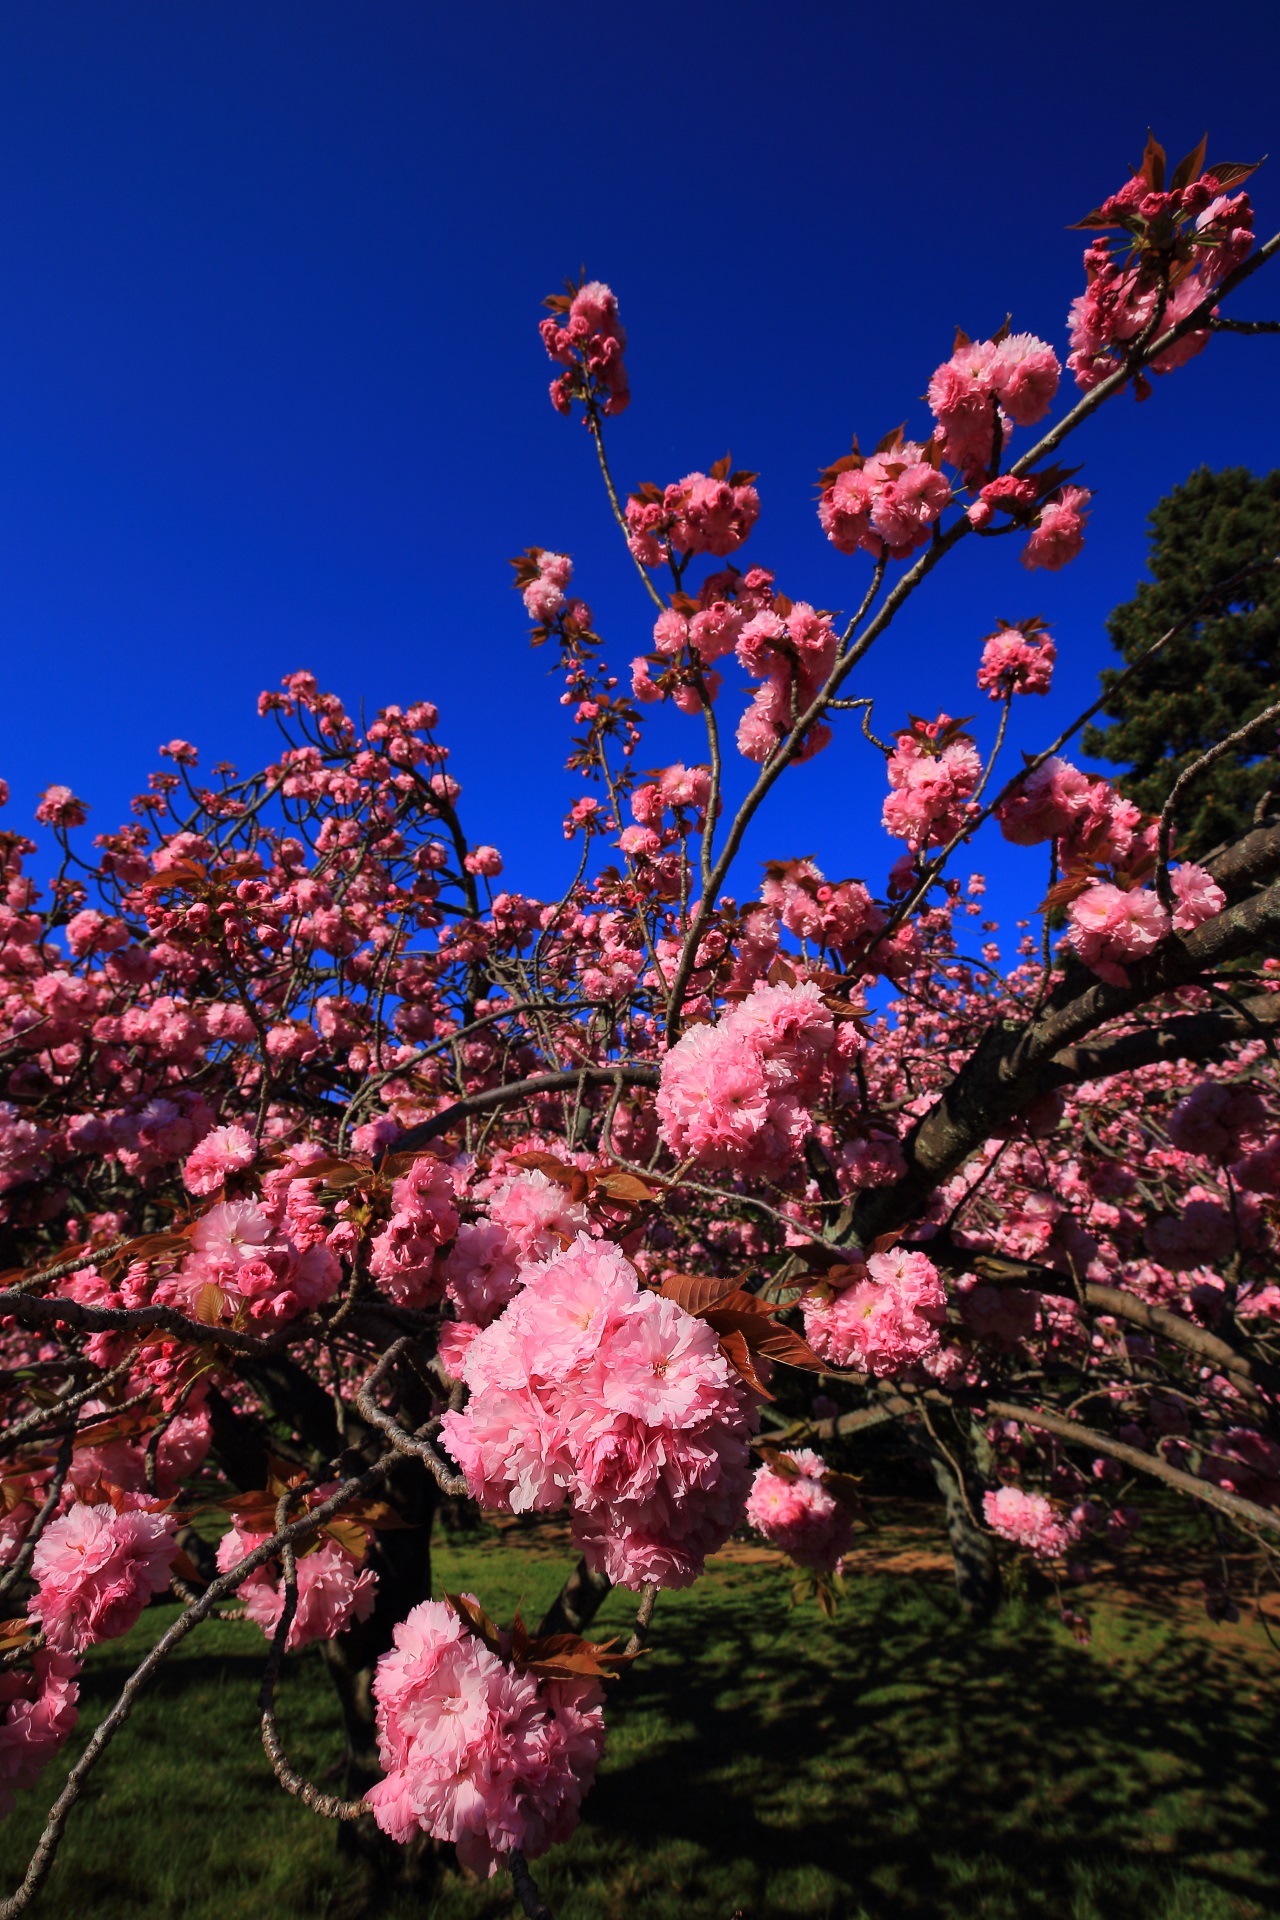 豪快だが花びら一つ一つは可愛く繊細な桜